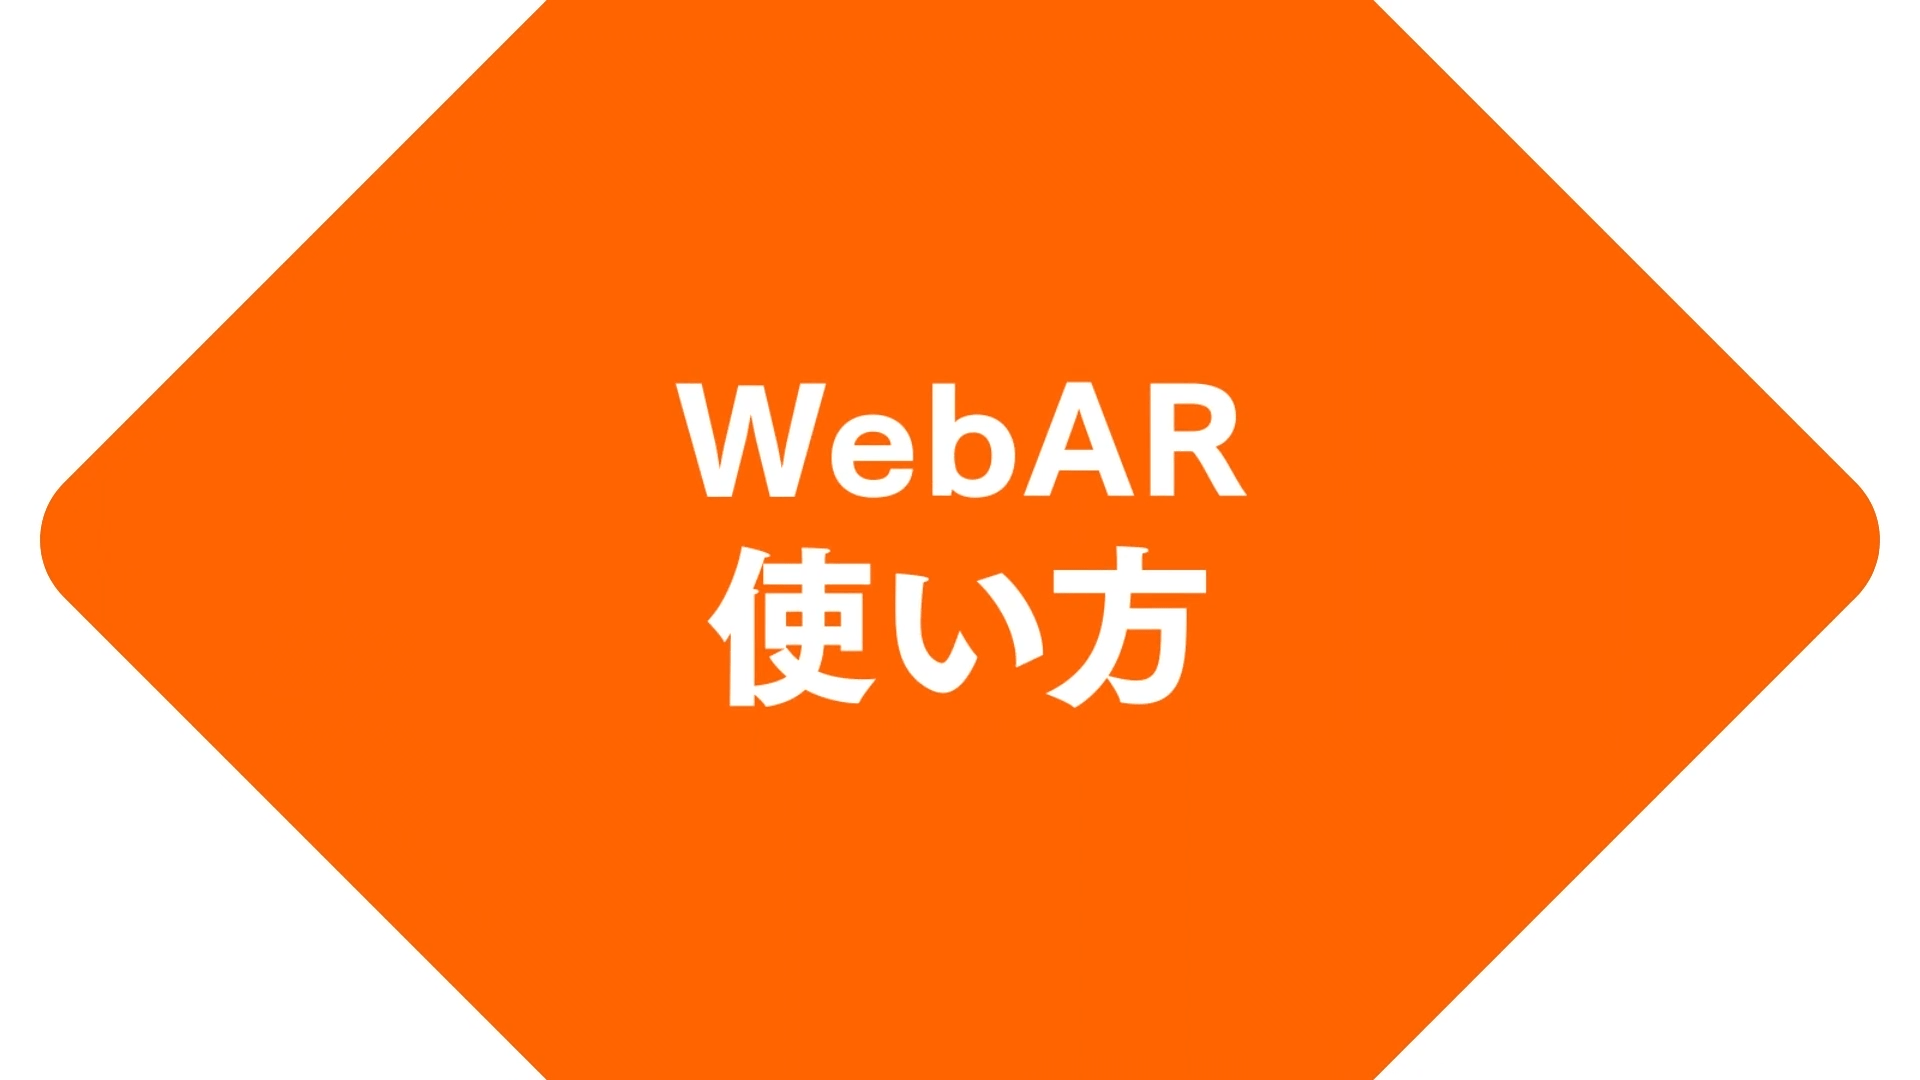 WebARの使い方動画